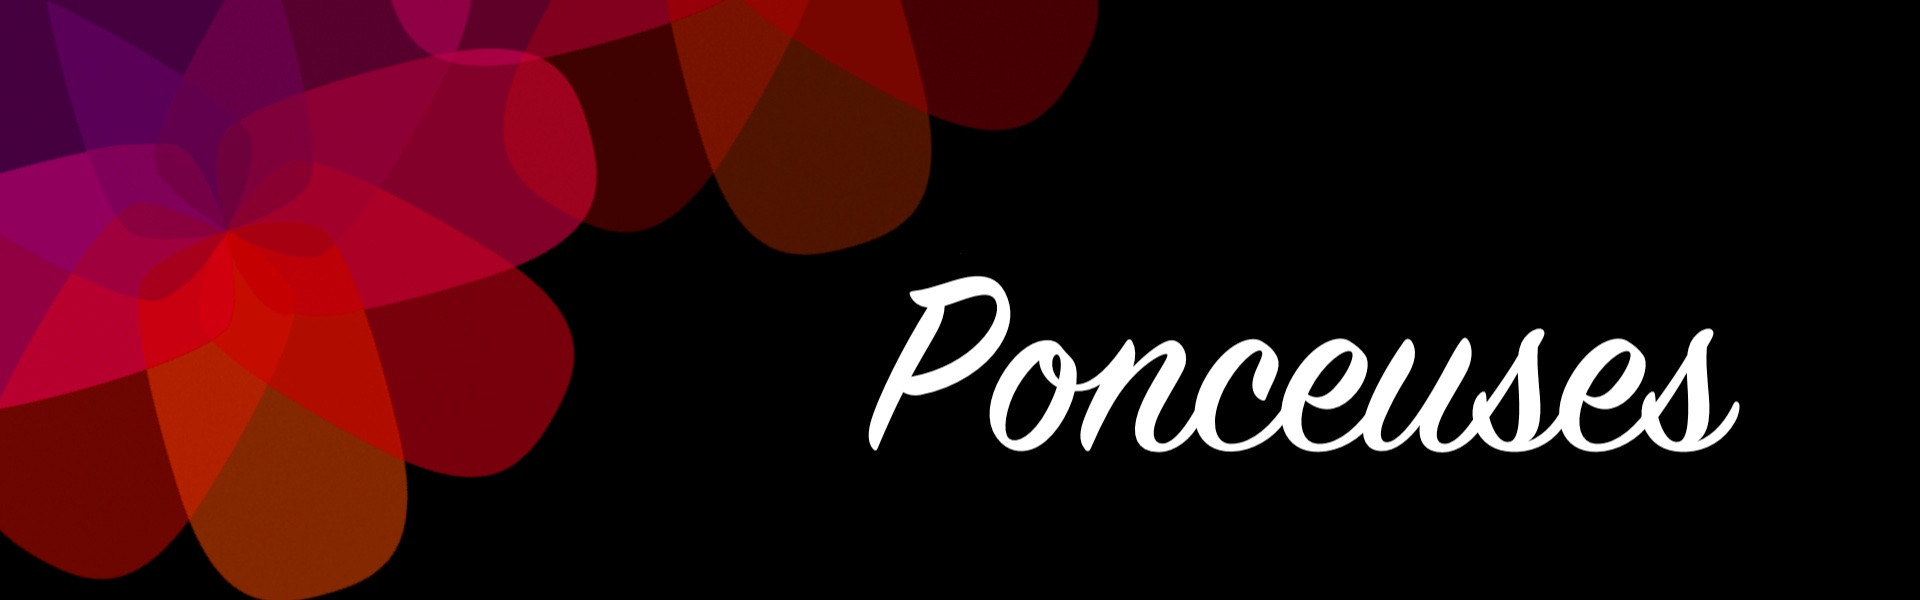 Ponceuses